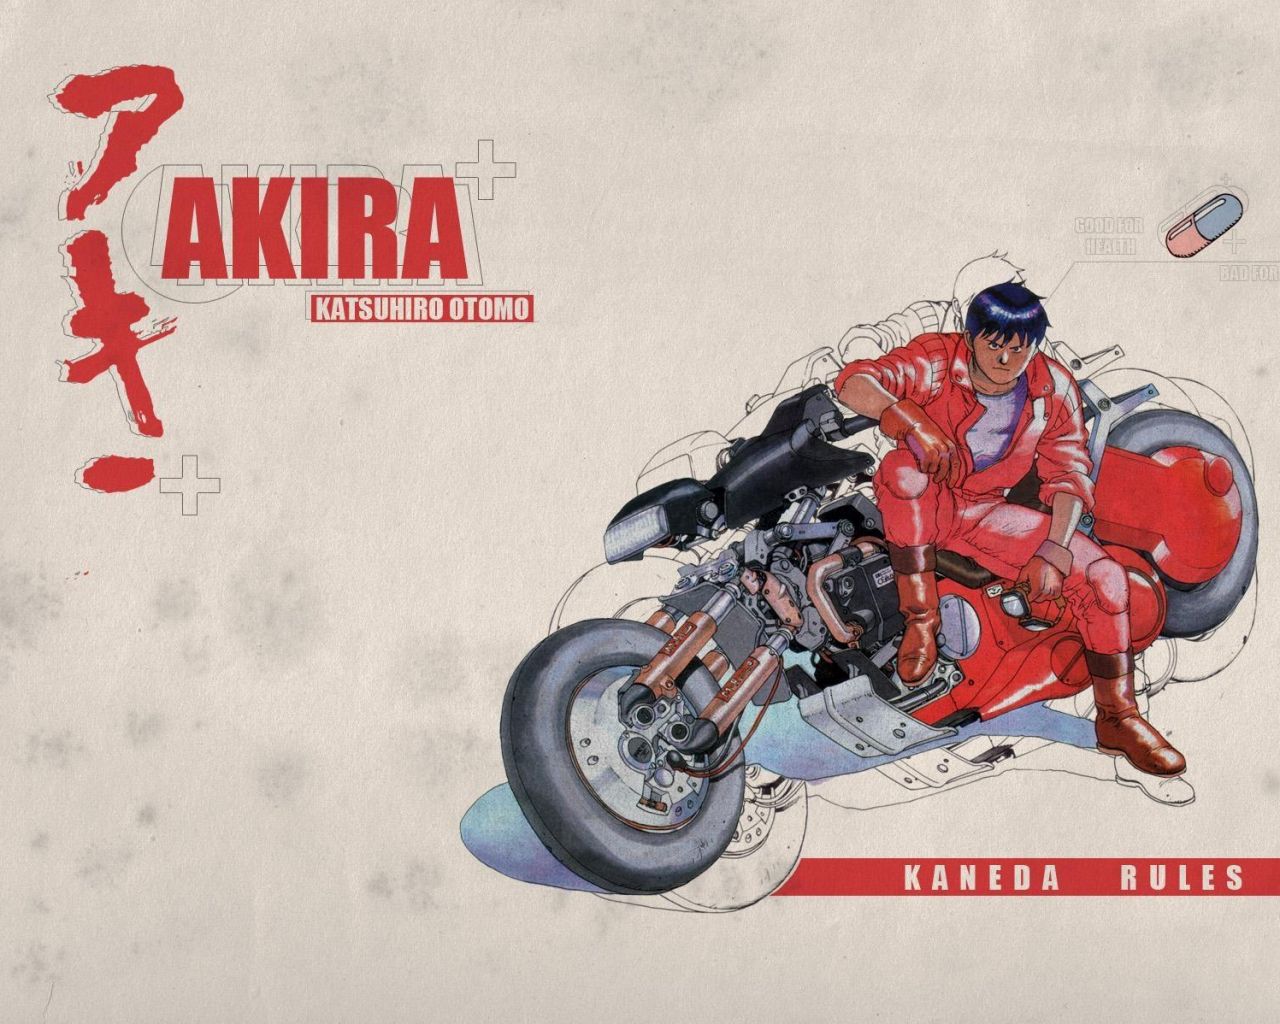 Фильм Акира (Фильм) | Akira - лучшие обои для рабочего стола